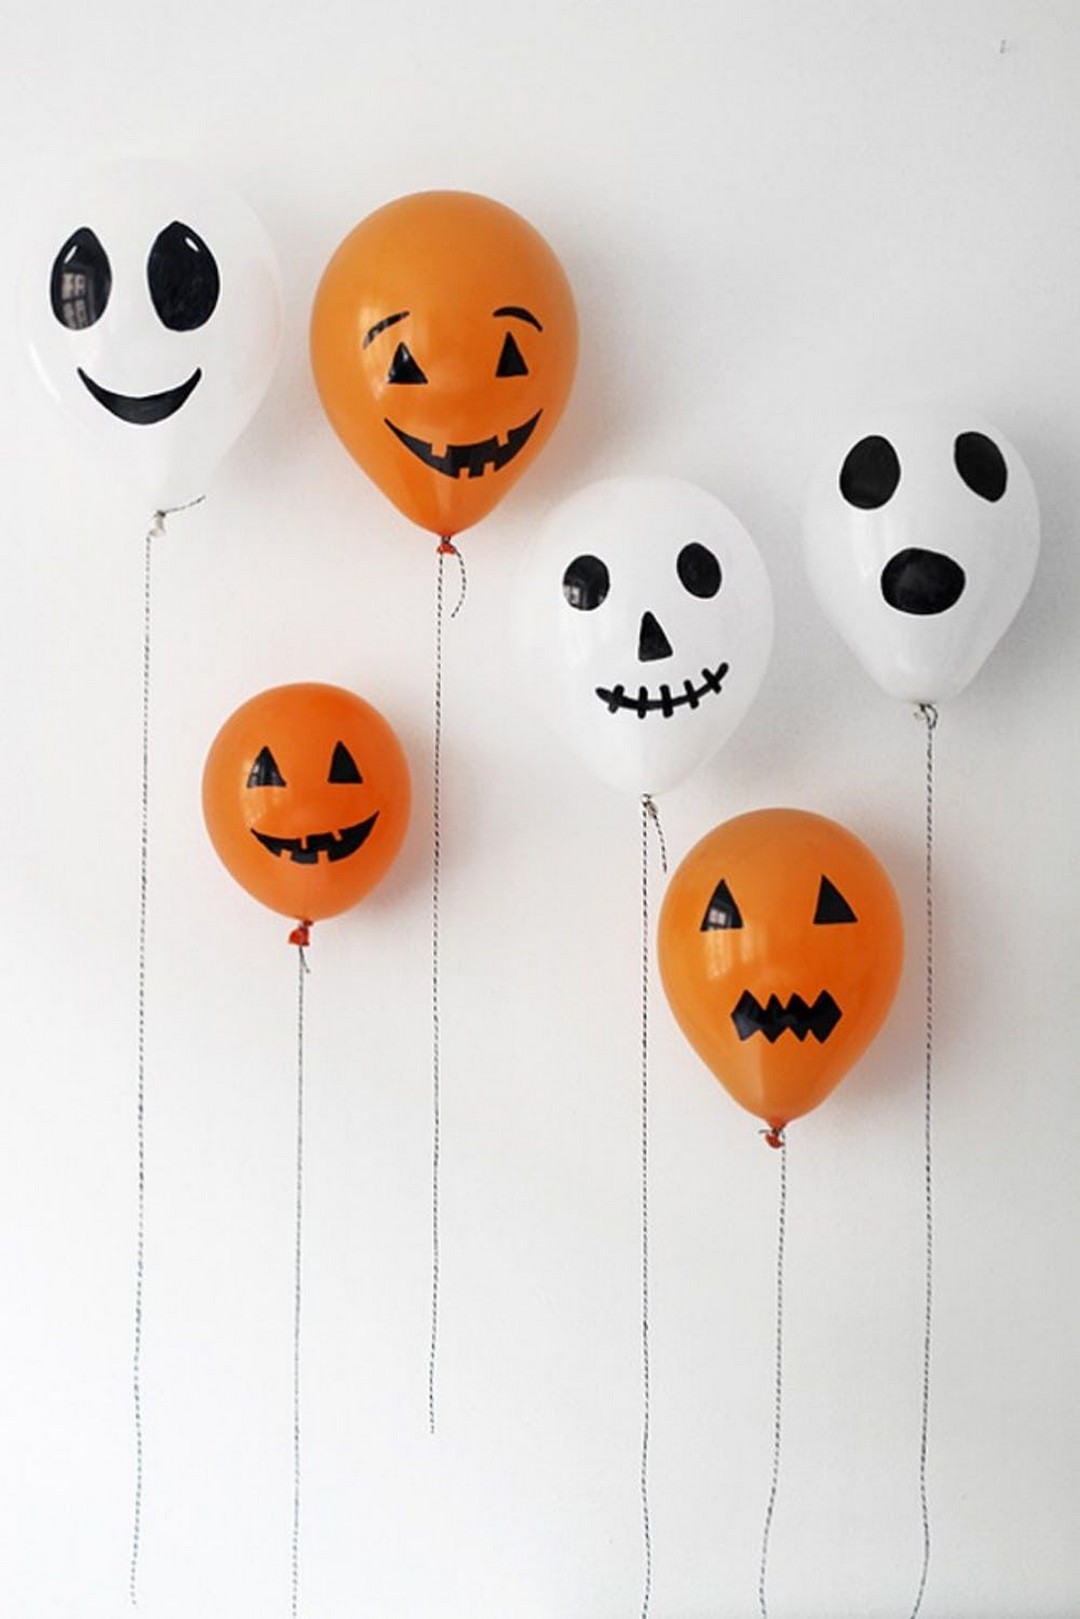 13. Halloween balloons